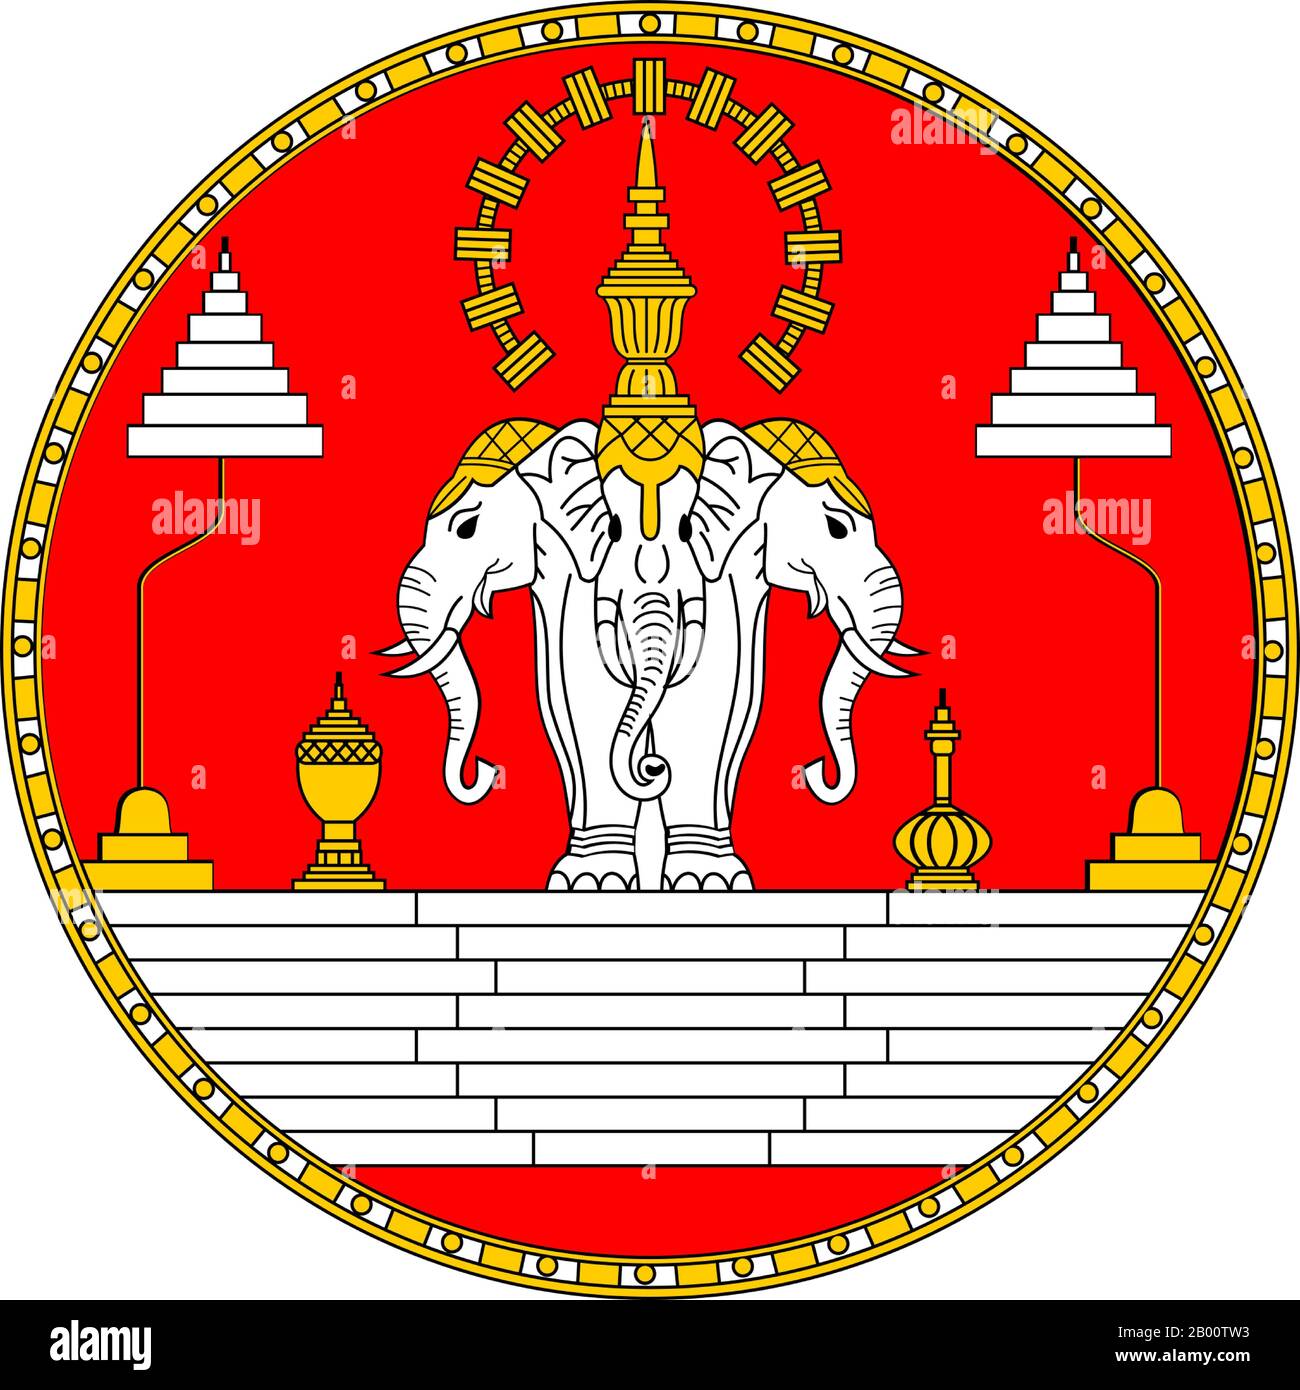 Laos: Der Königliche Standard von Laos, 1949-1975. Die Royal Lao Flagge ist ein dreiköpfiger Elefant, der als Erawan bezeichnet wird. Der dreiköpfige Elefant hat in der Regel den geschichteten "Schirm" über seinen Köpfen im Gegensatz zu einem auf beiden Seiten. Das Königreich Laos existierte vom 14. Bis zum 18. Jahrhundert, dann in drei separate Königreiche aufgeteilt. 1893 wurde es ein französisches Protektorat, und die drei Königreiche – Luang Prabang, Vientiane und Champasak – Vereinigten sich zu dem, was heute als Laos bekannt ist. Das Land gewann kurz Unabhängigkeit im Jahr 1945 nach japanischer Besetzung, sondern kehrte zu Französisch Herrschaft bis 1954 Stockfoto